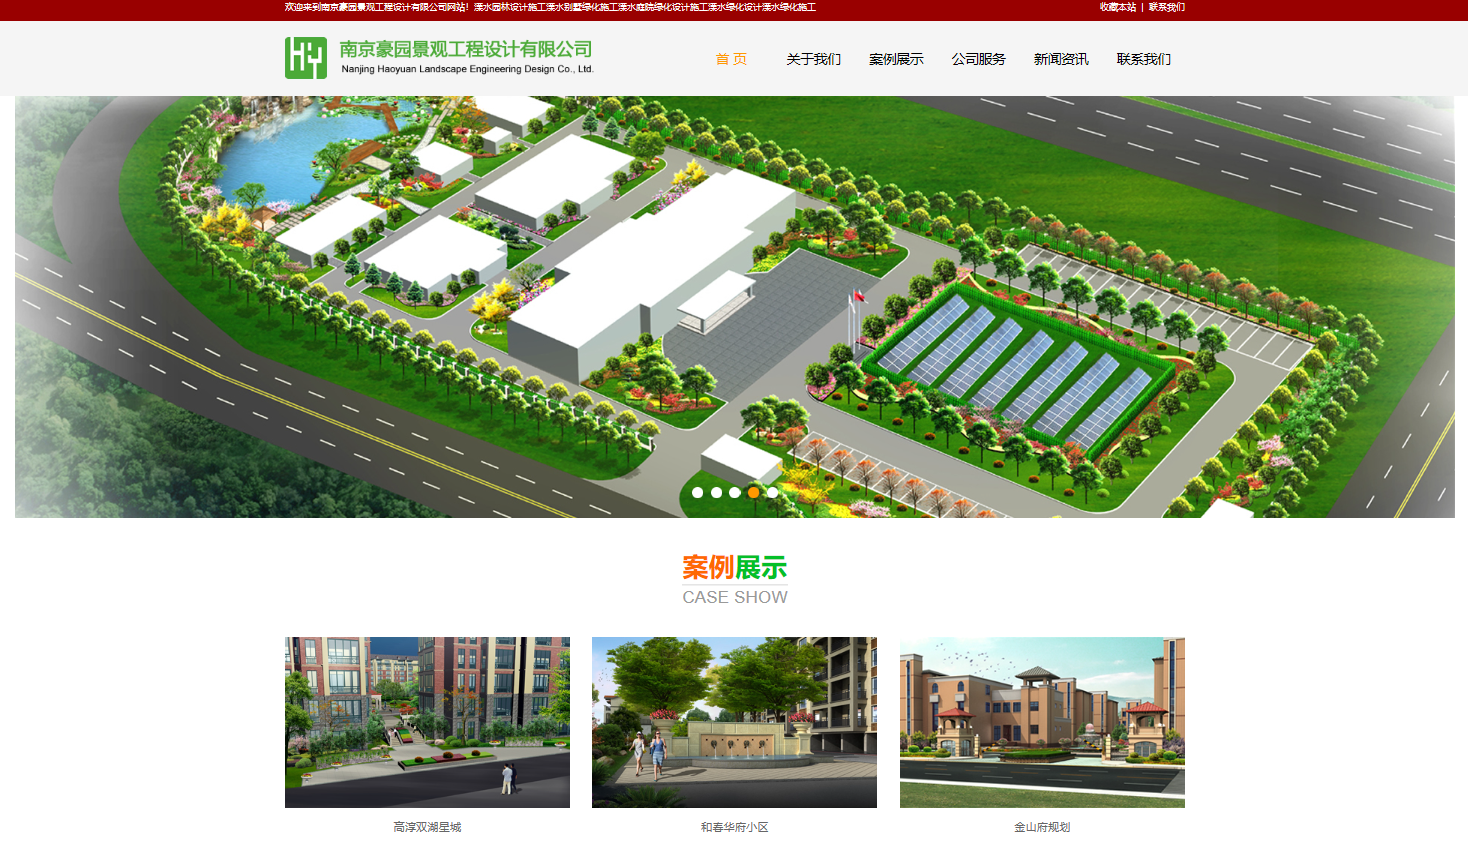 南京豪园景观工程设计有限公司